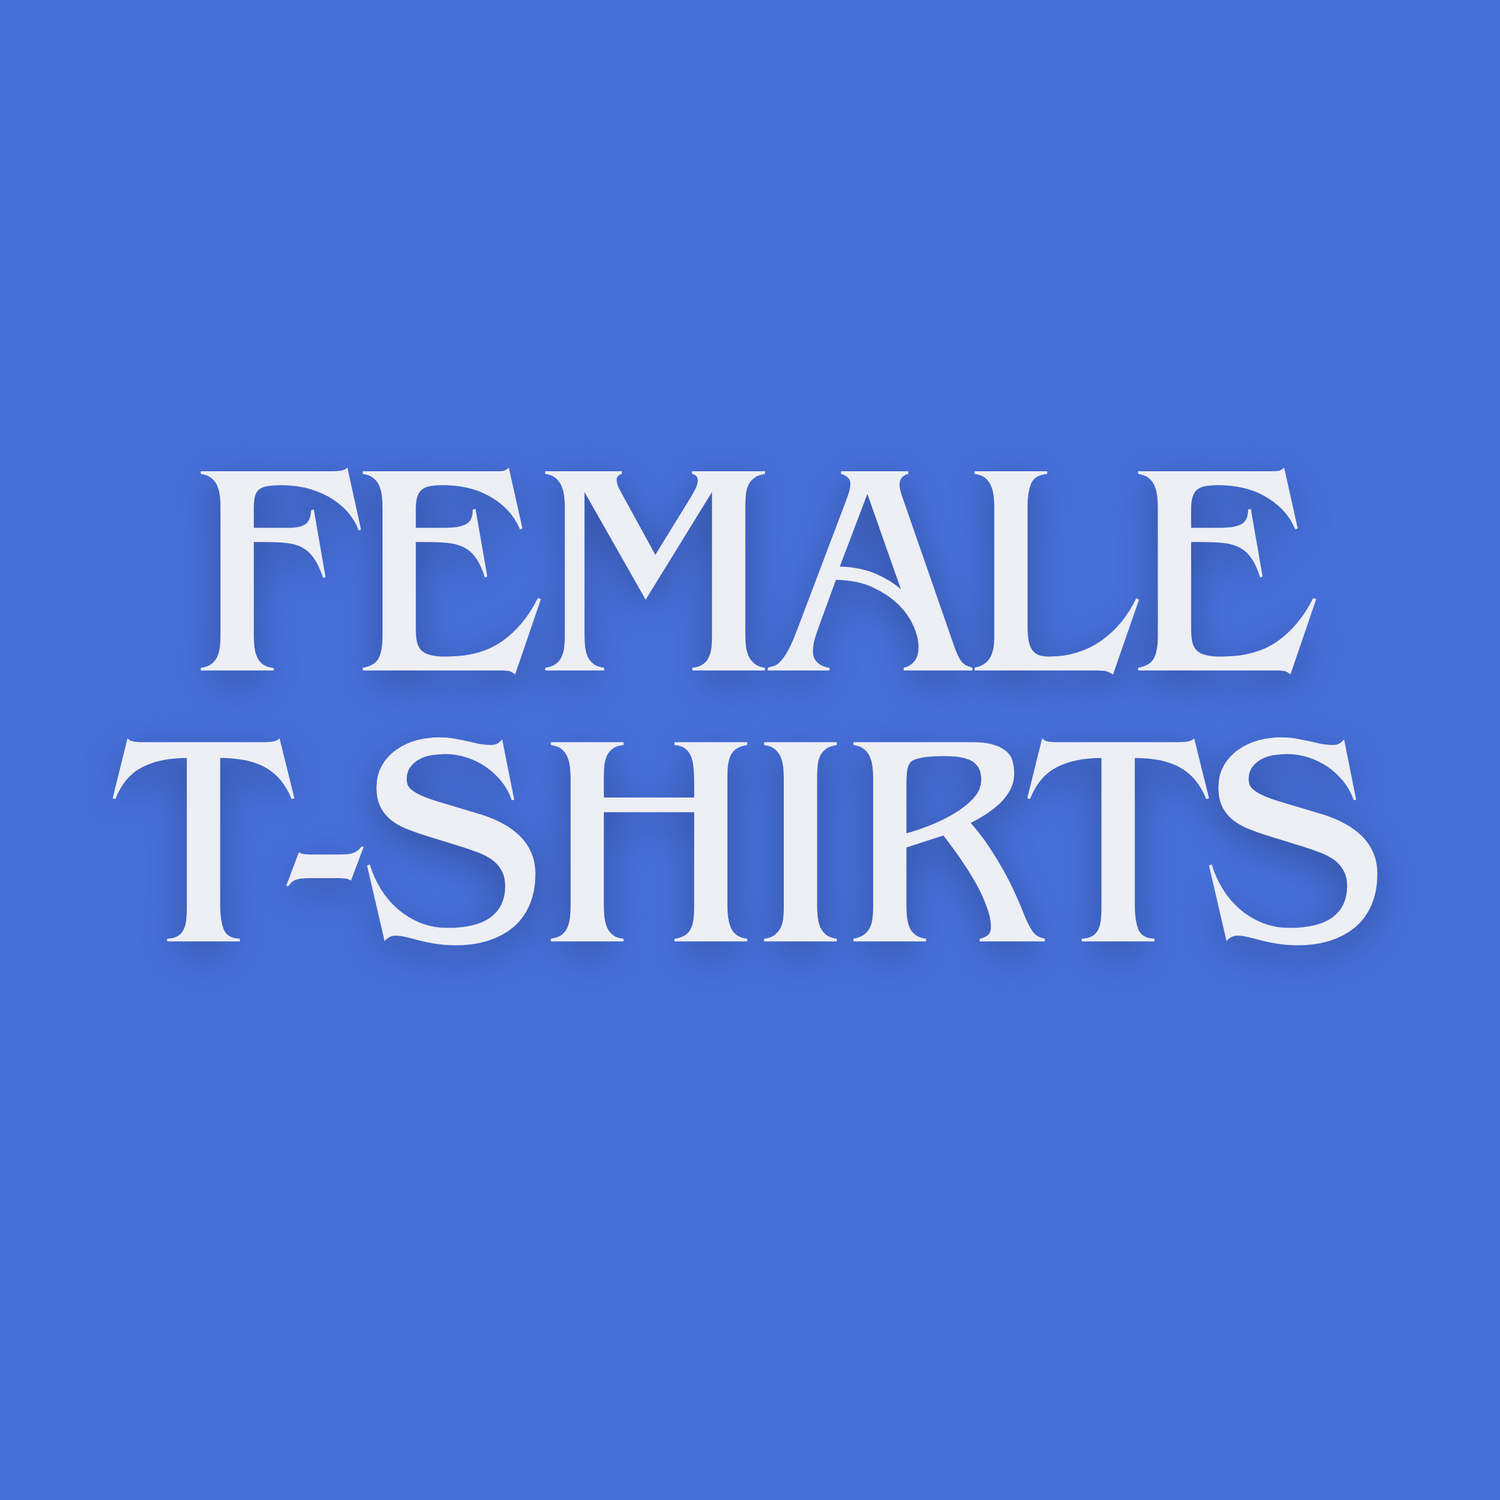 Female t-shirts